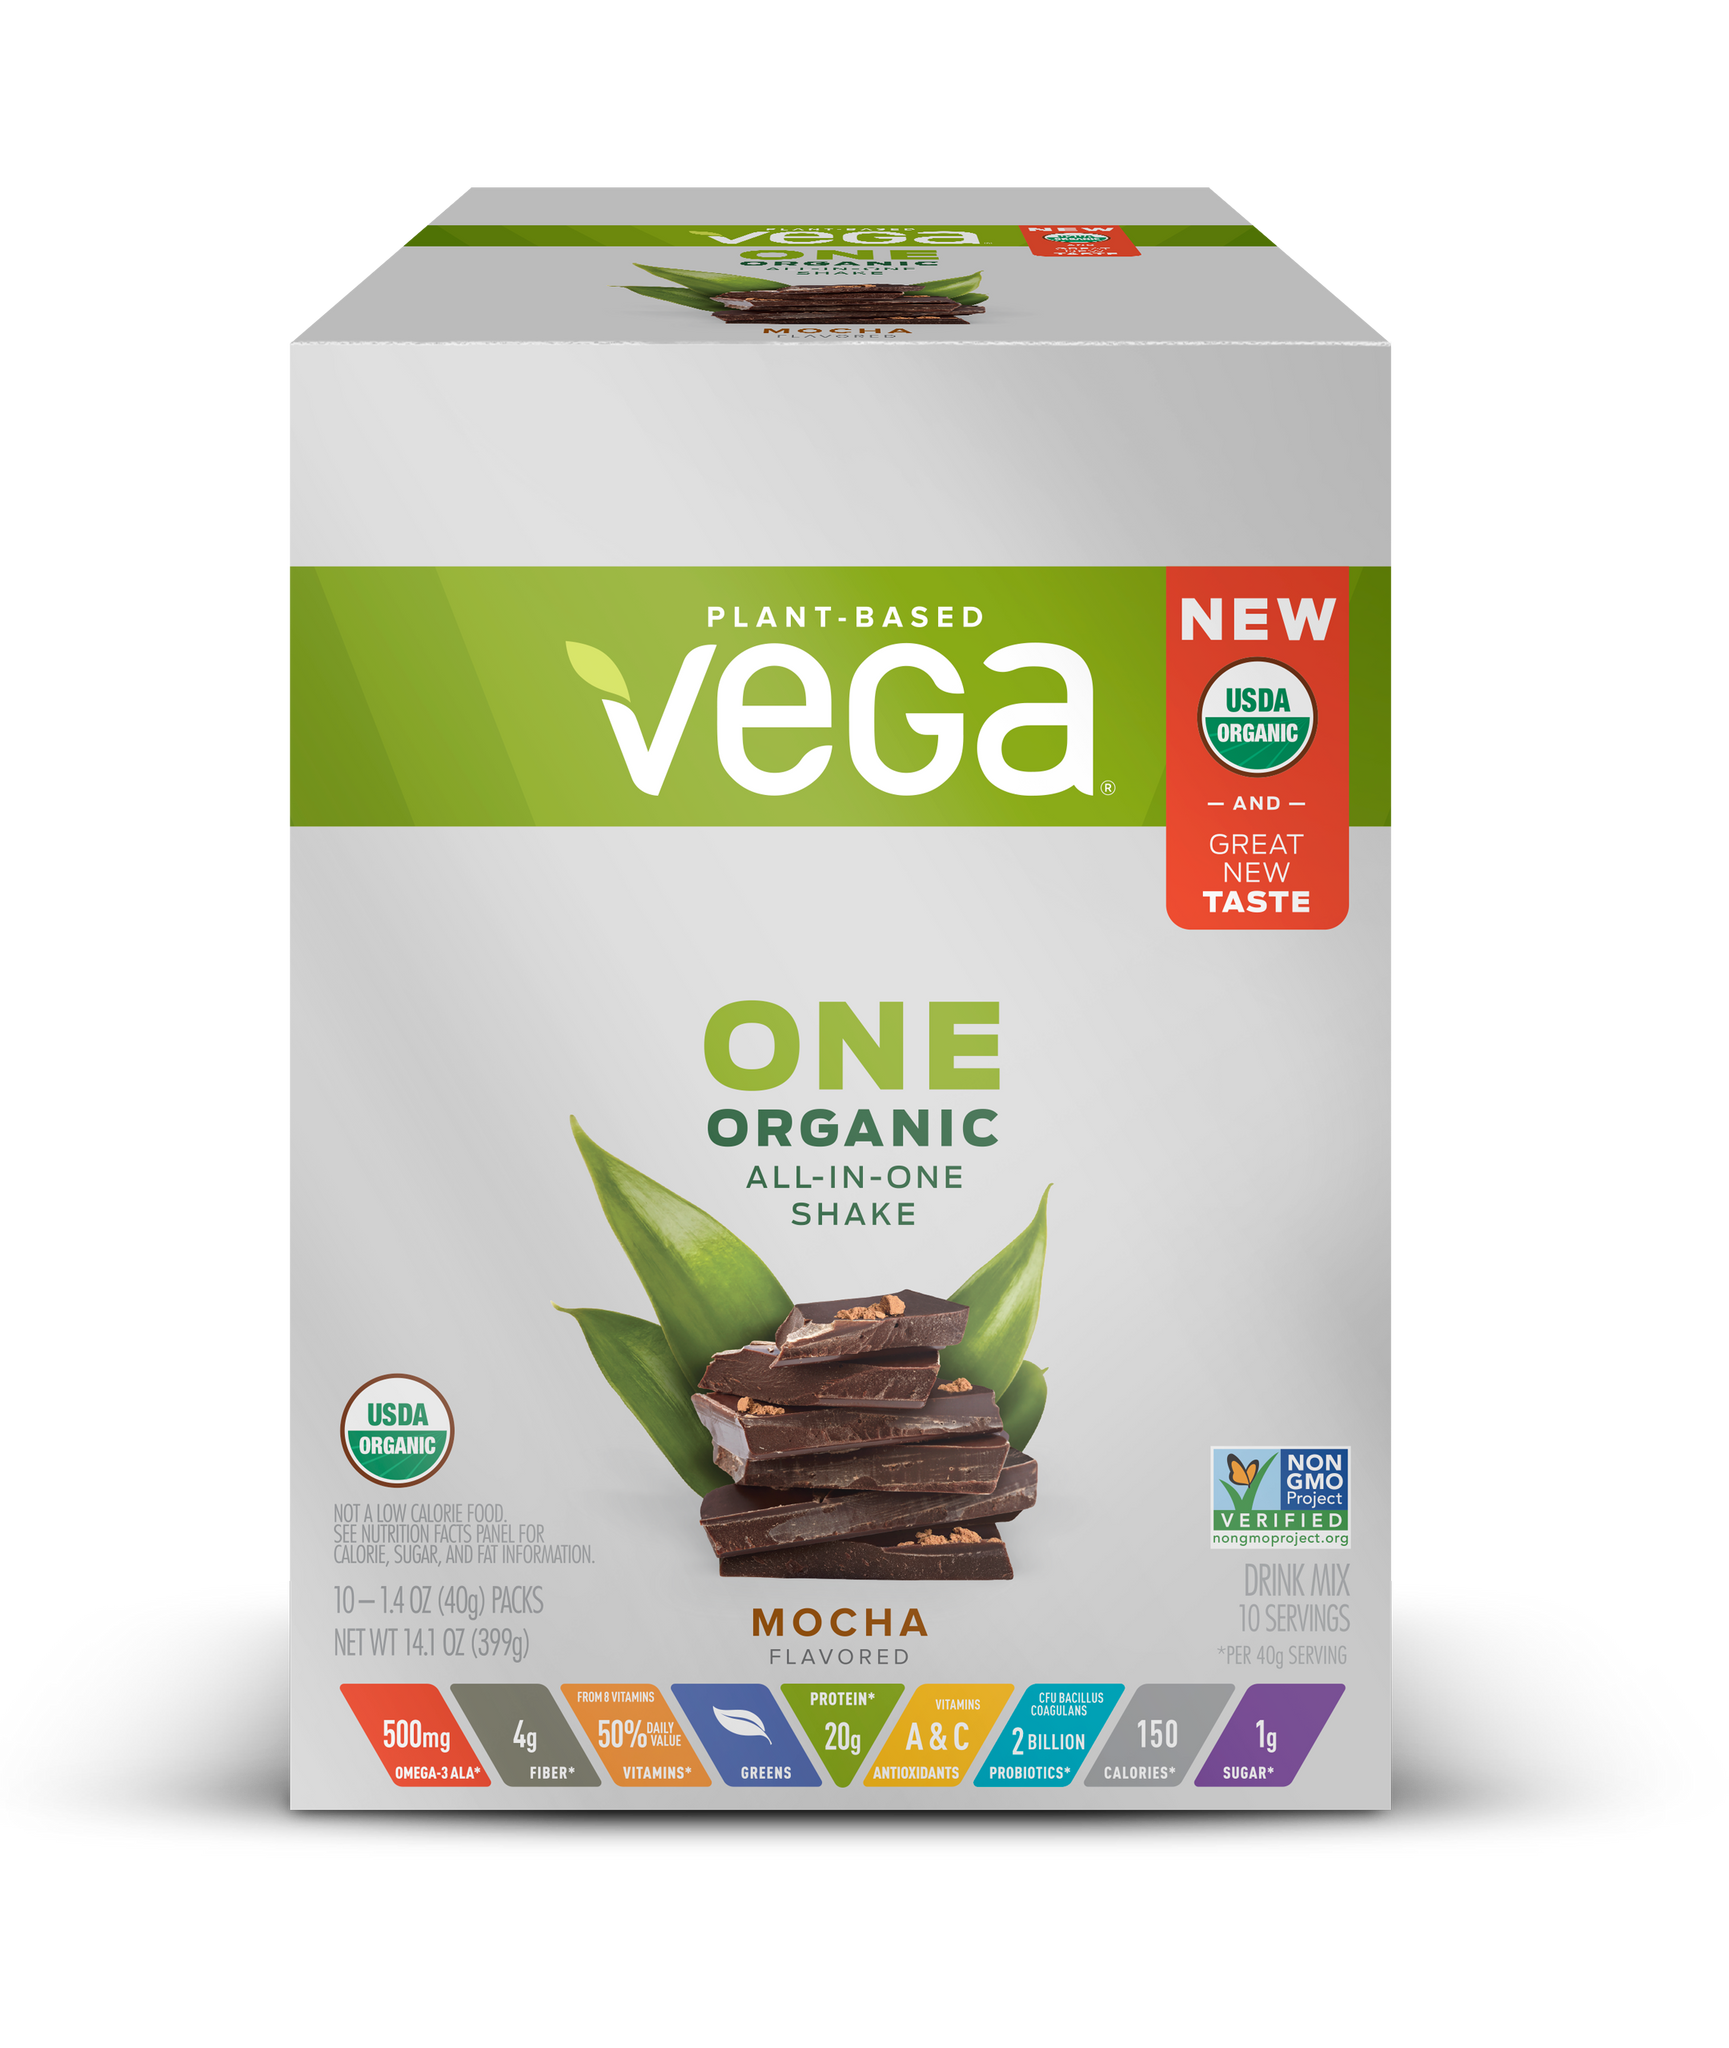 Vega One® Organic All-in-One Shake - Plant-Based